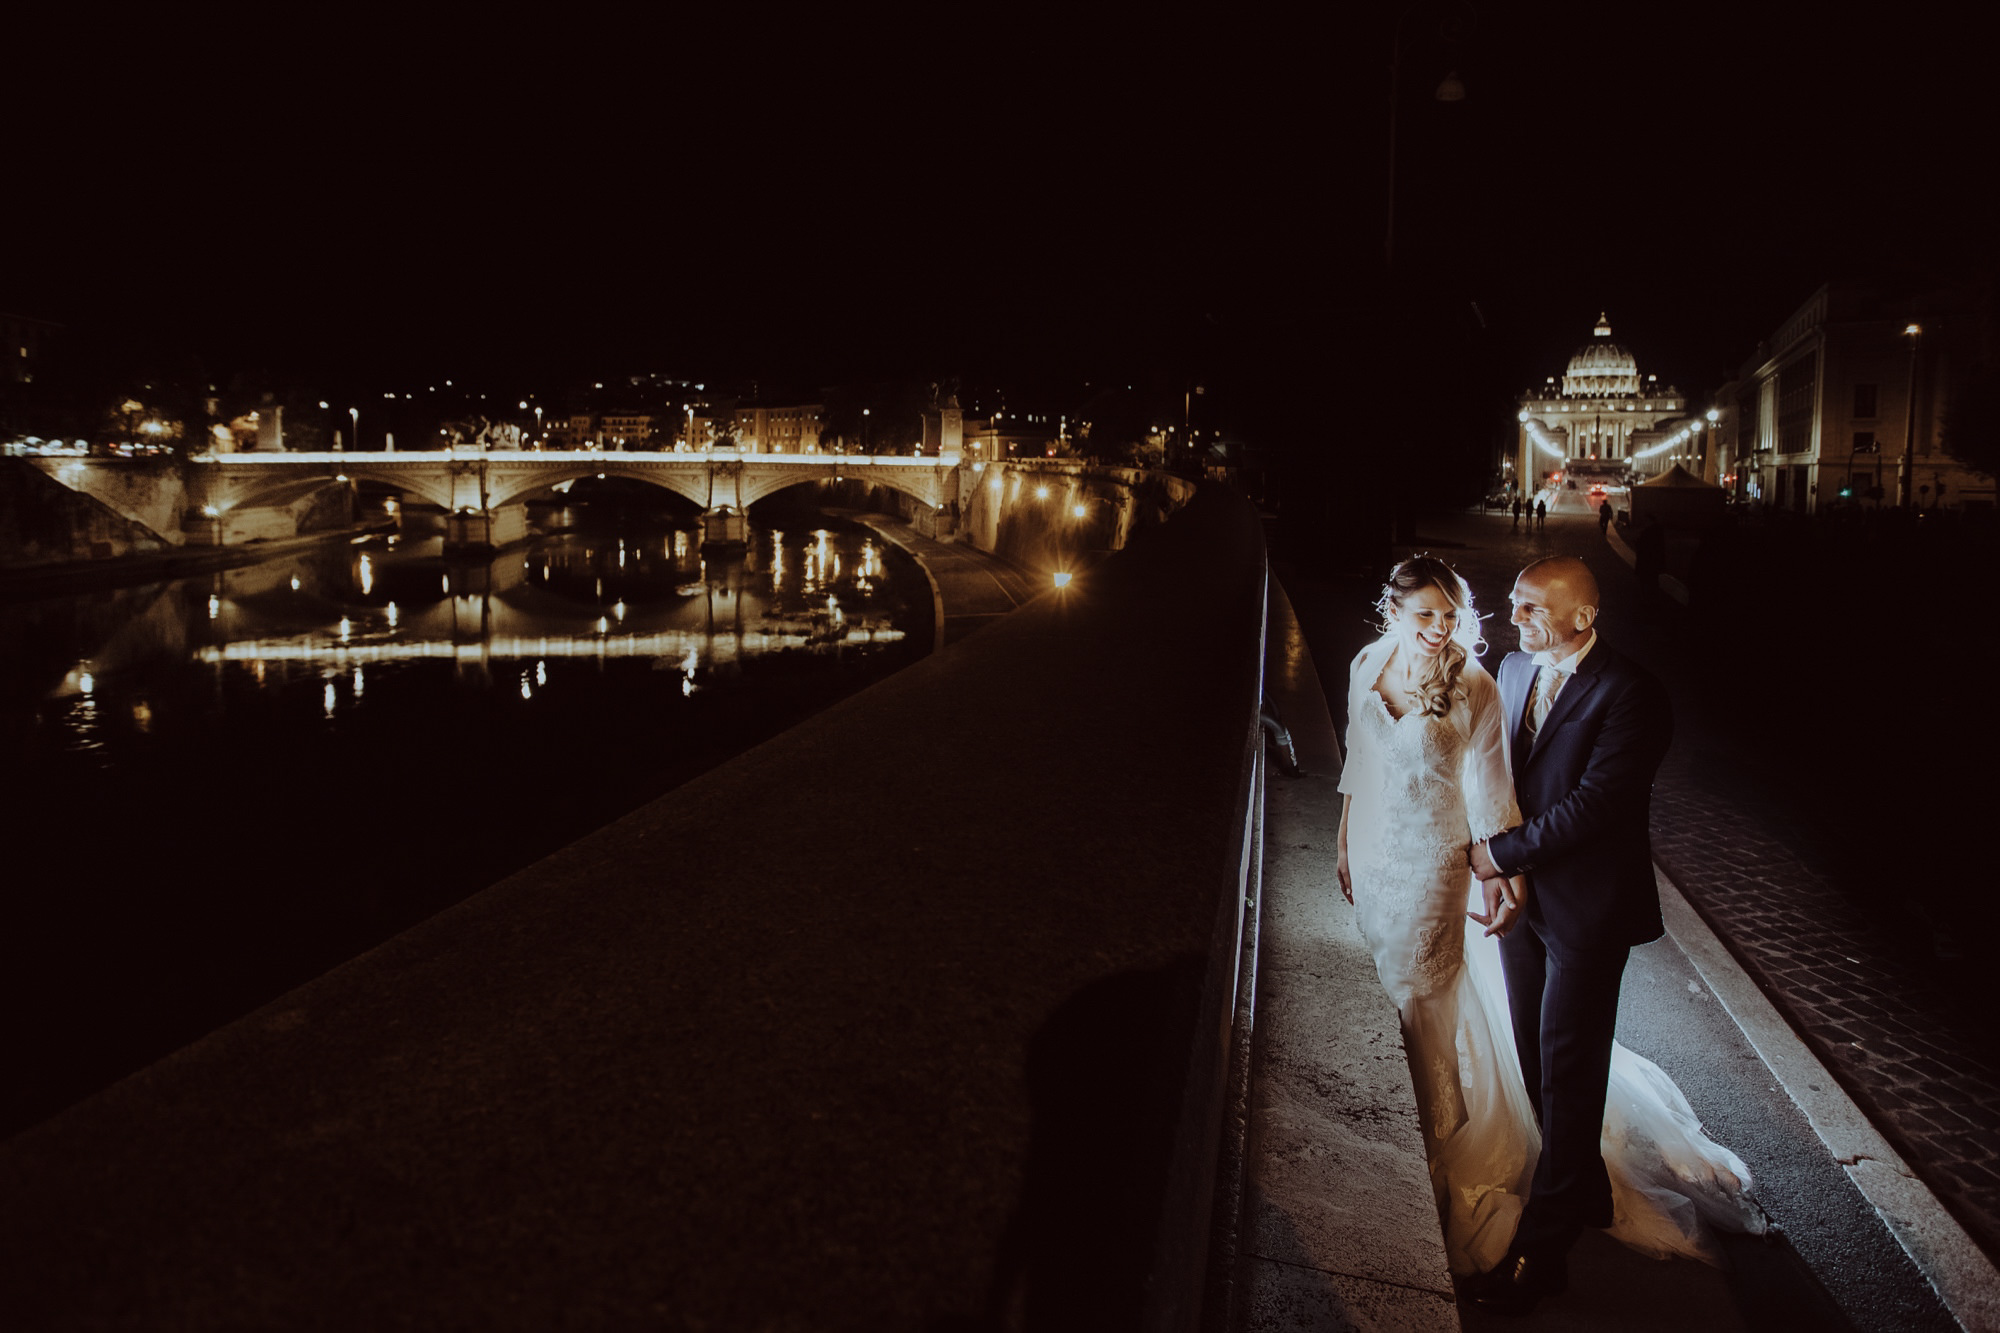 matrimonio intimo roma migliore fotografo massaro